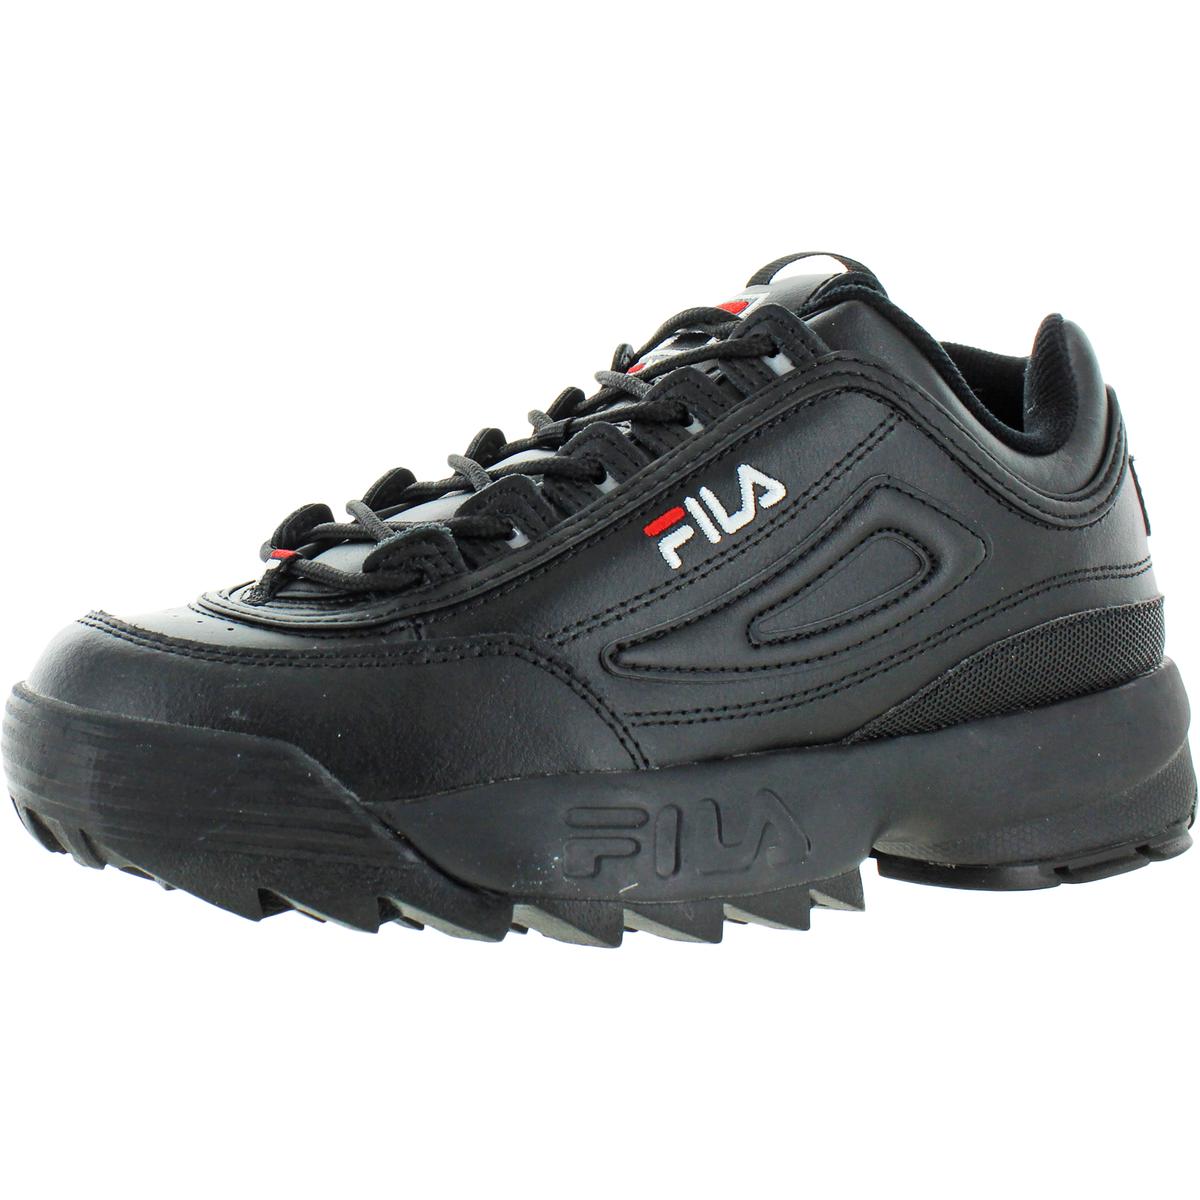 Fila Mens Disruptor II Premium Black Walking Shoes 9.5 Medium (D) BHFO ...